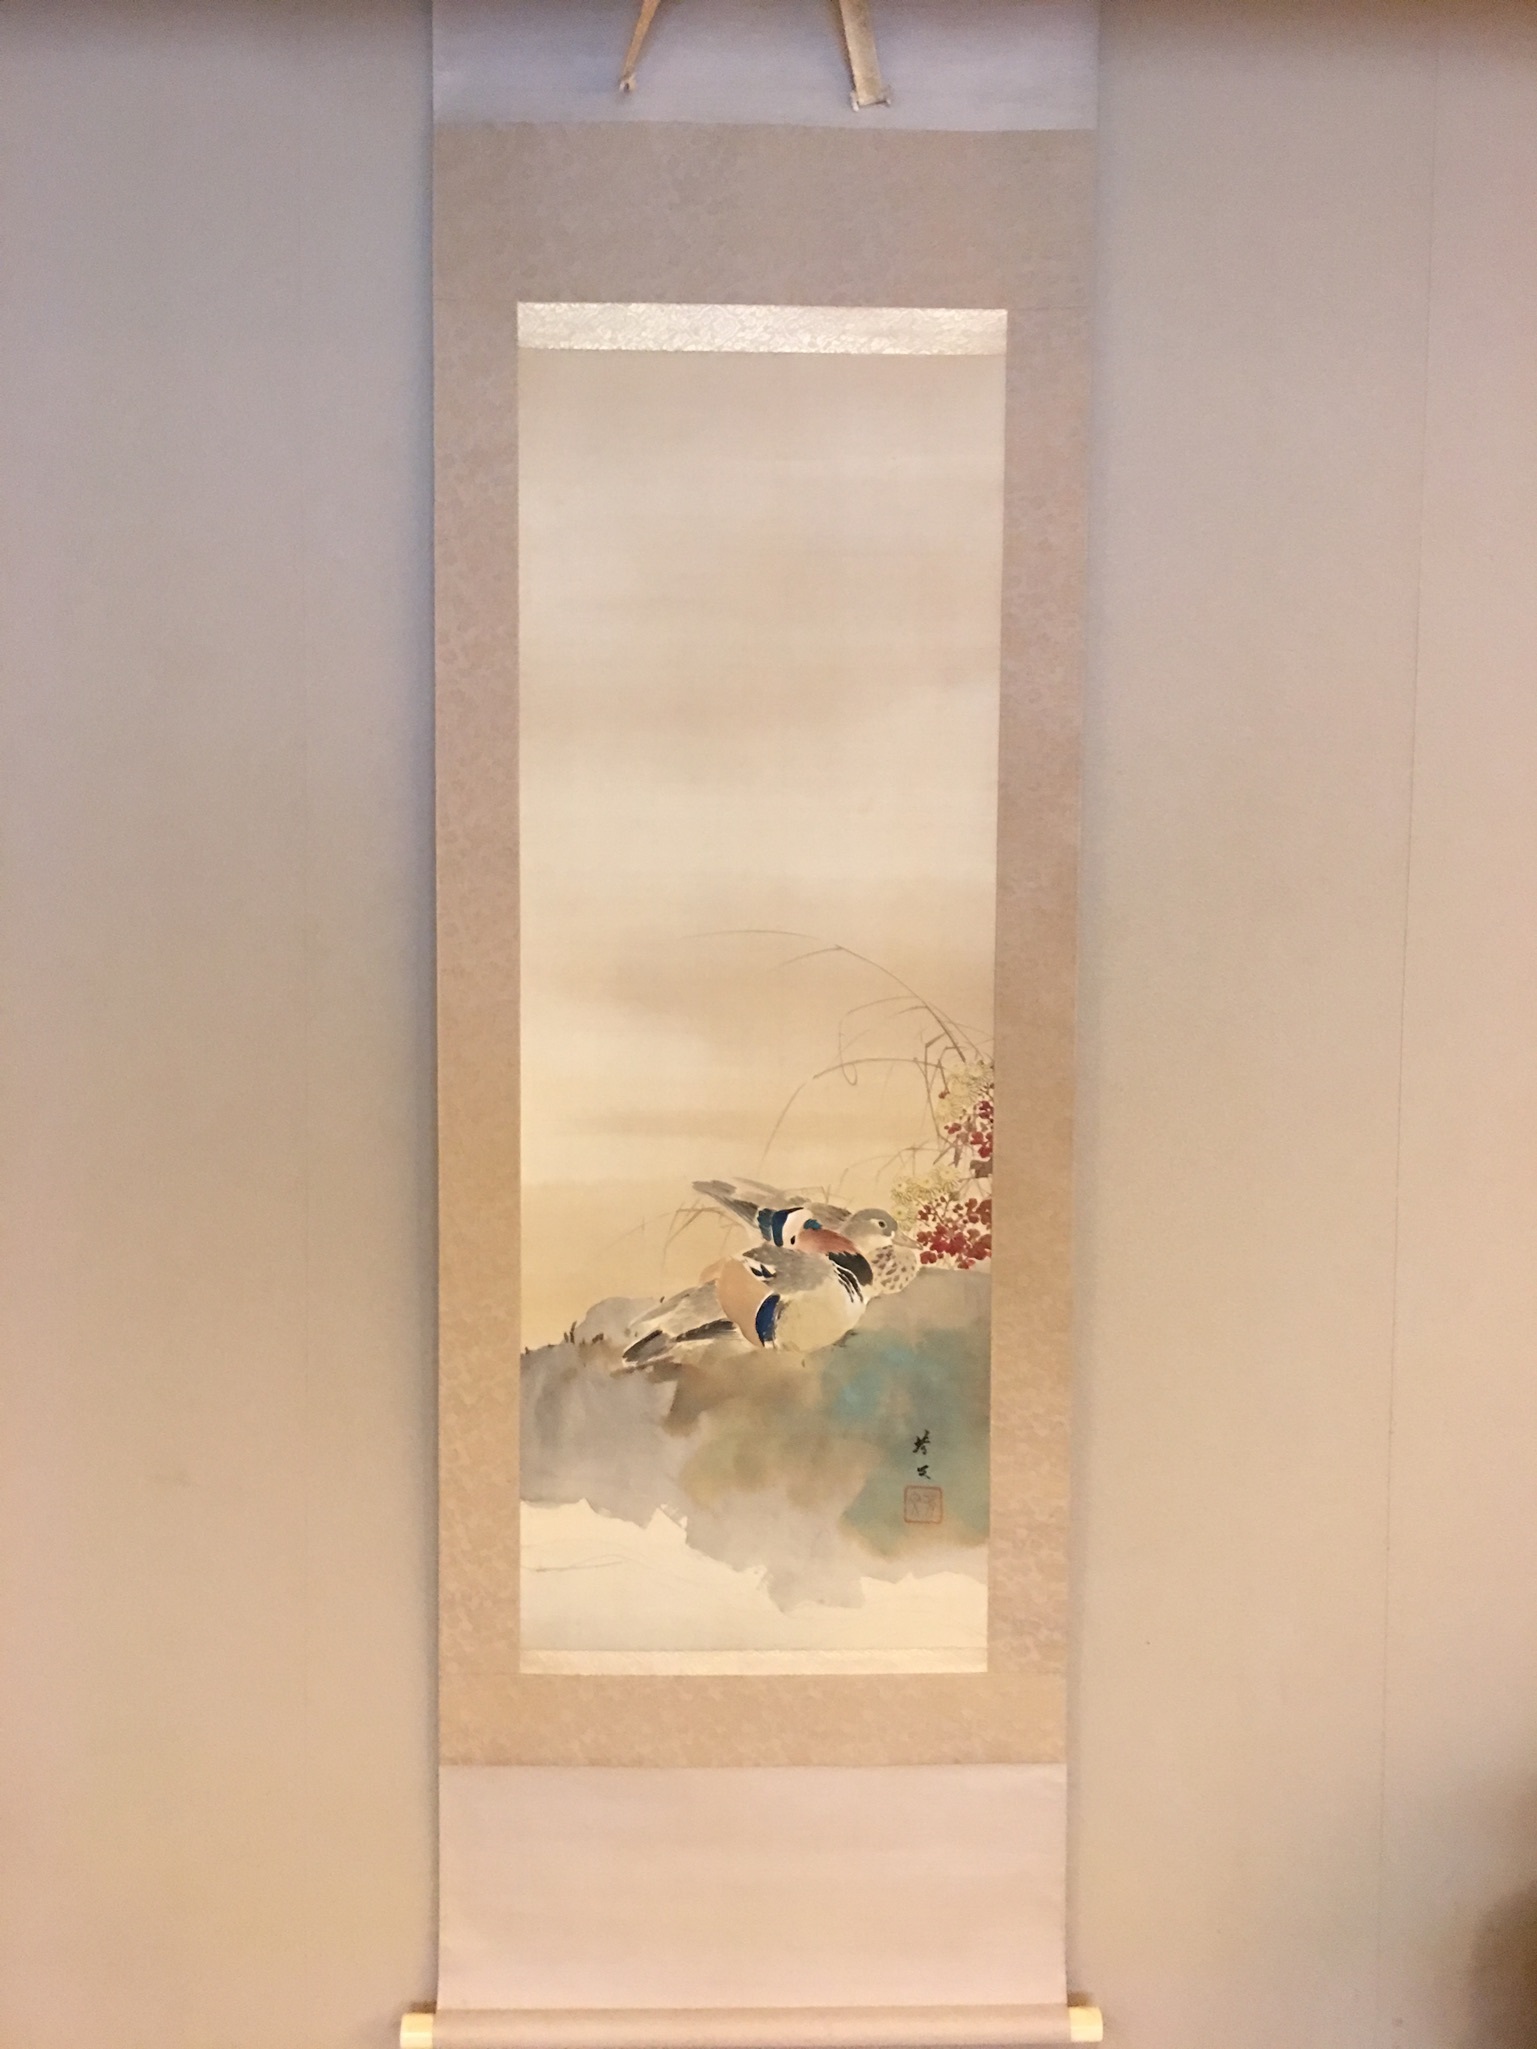 掛軸日本画 膅畝 鴛鴦の図 梅の蕾と南天におしどりの図-